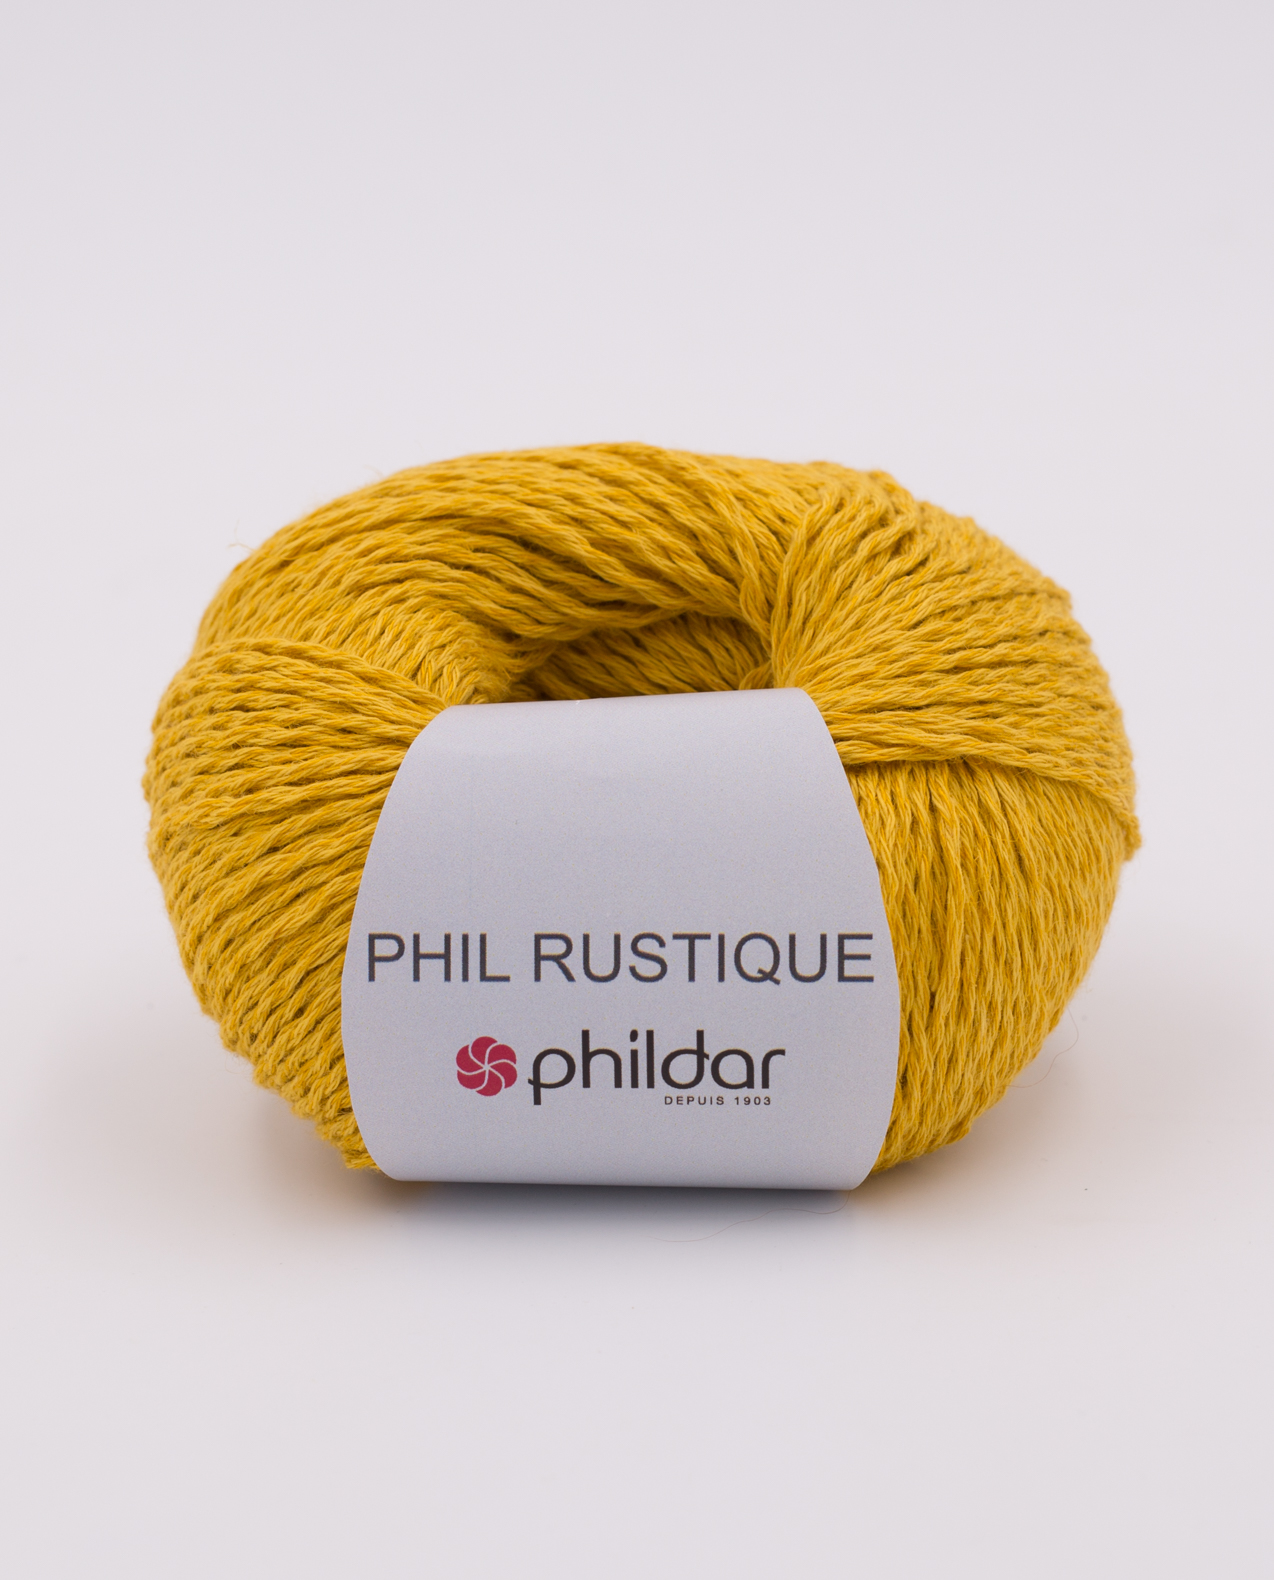 Phildar Phil Rustique kl 2019 Tournesol